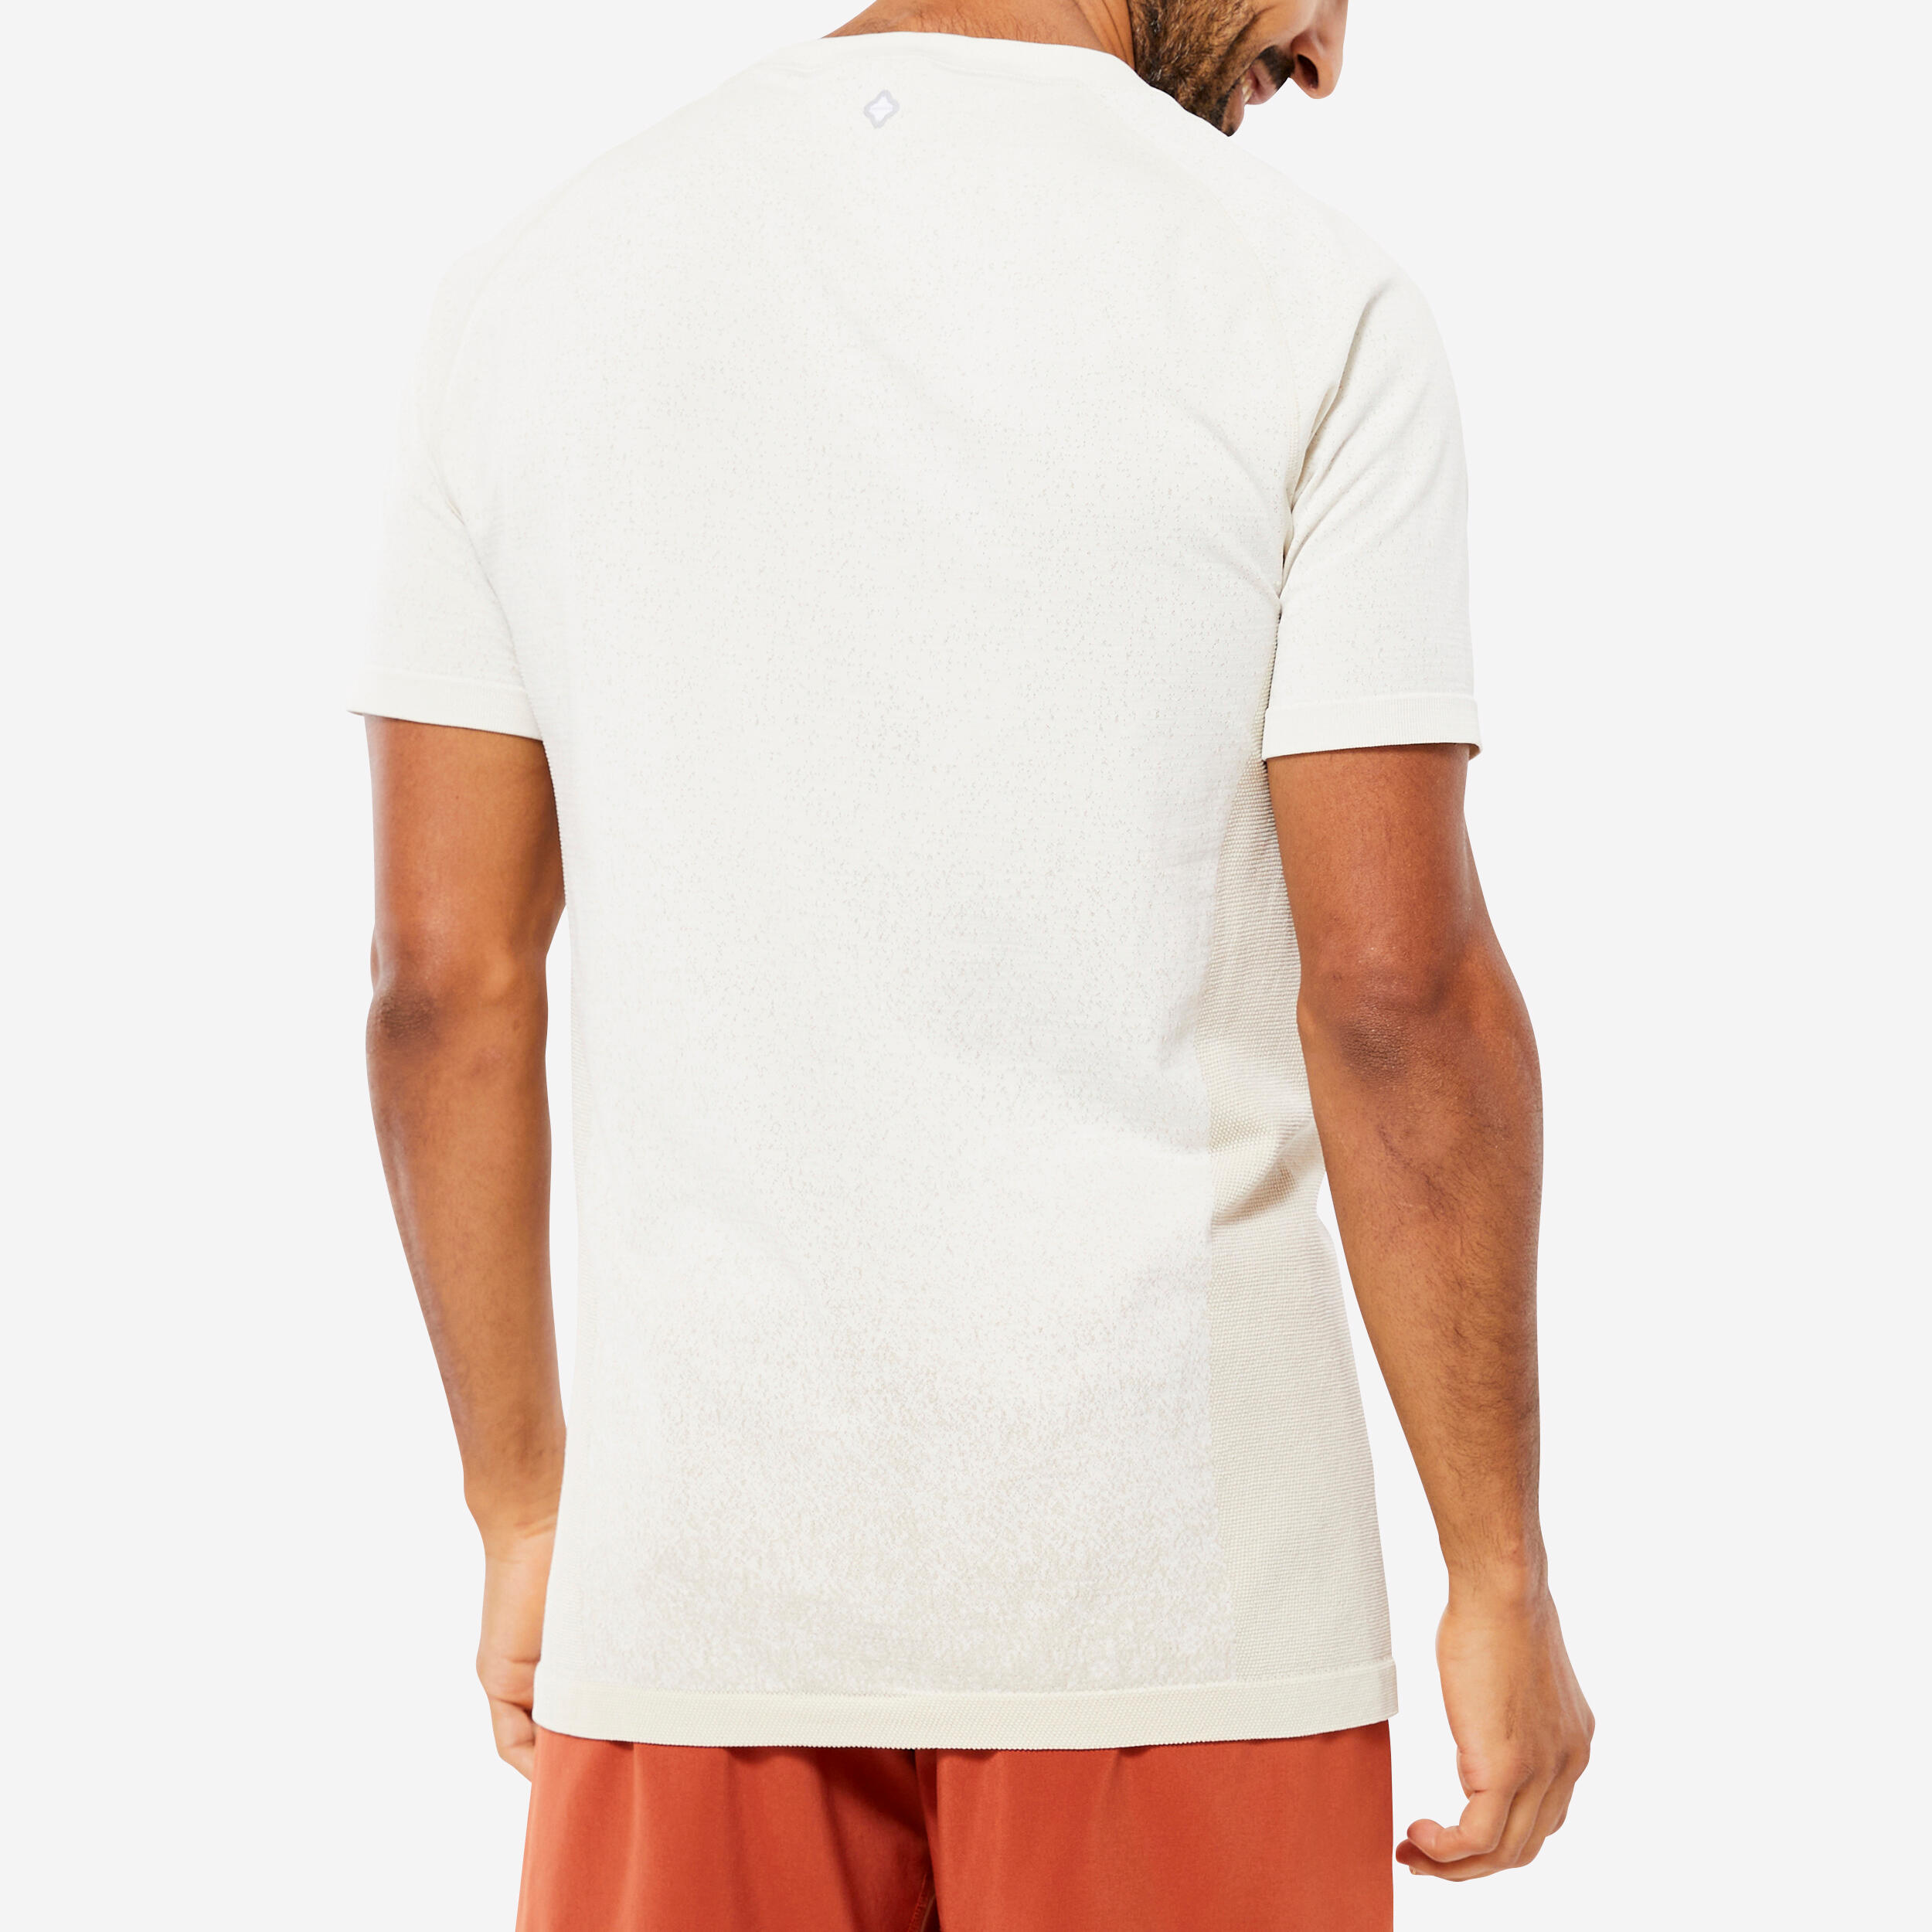 Men's Seamless Short-Sleeved Dynamic Yoga T-Shirt - White 5/6